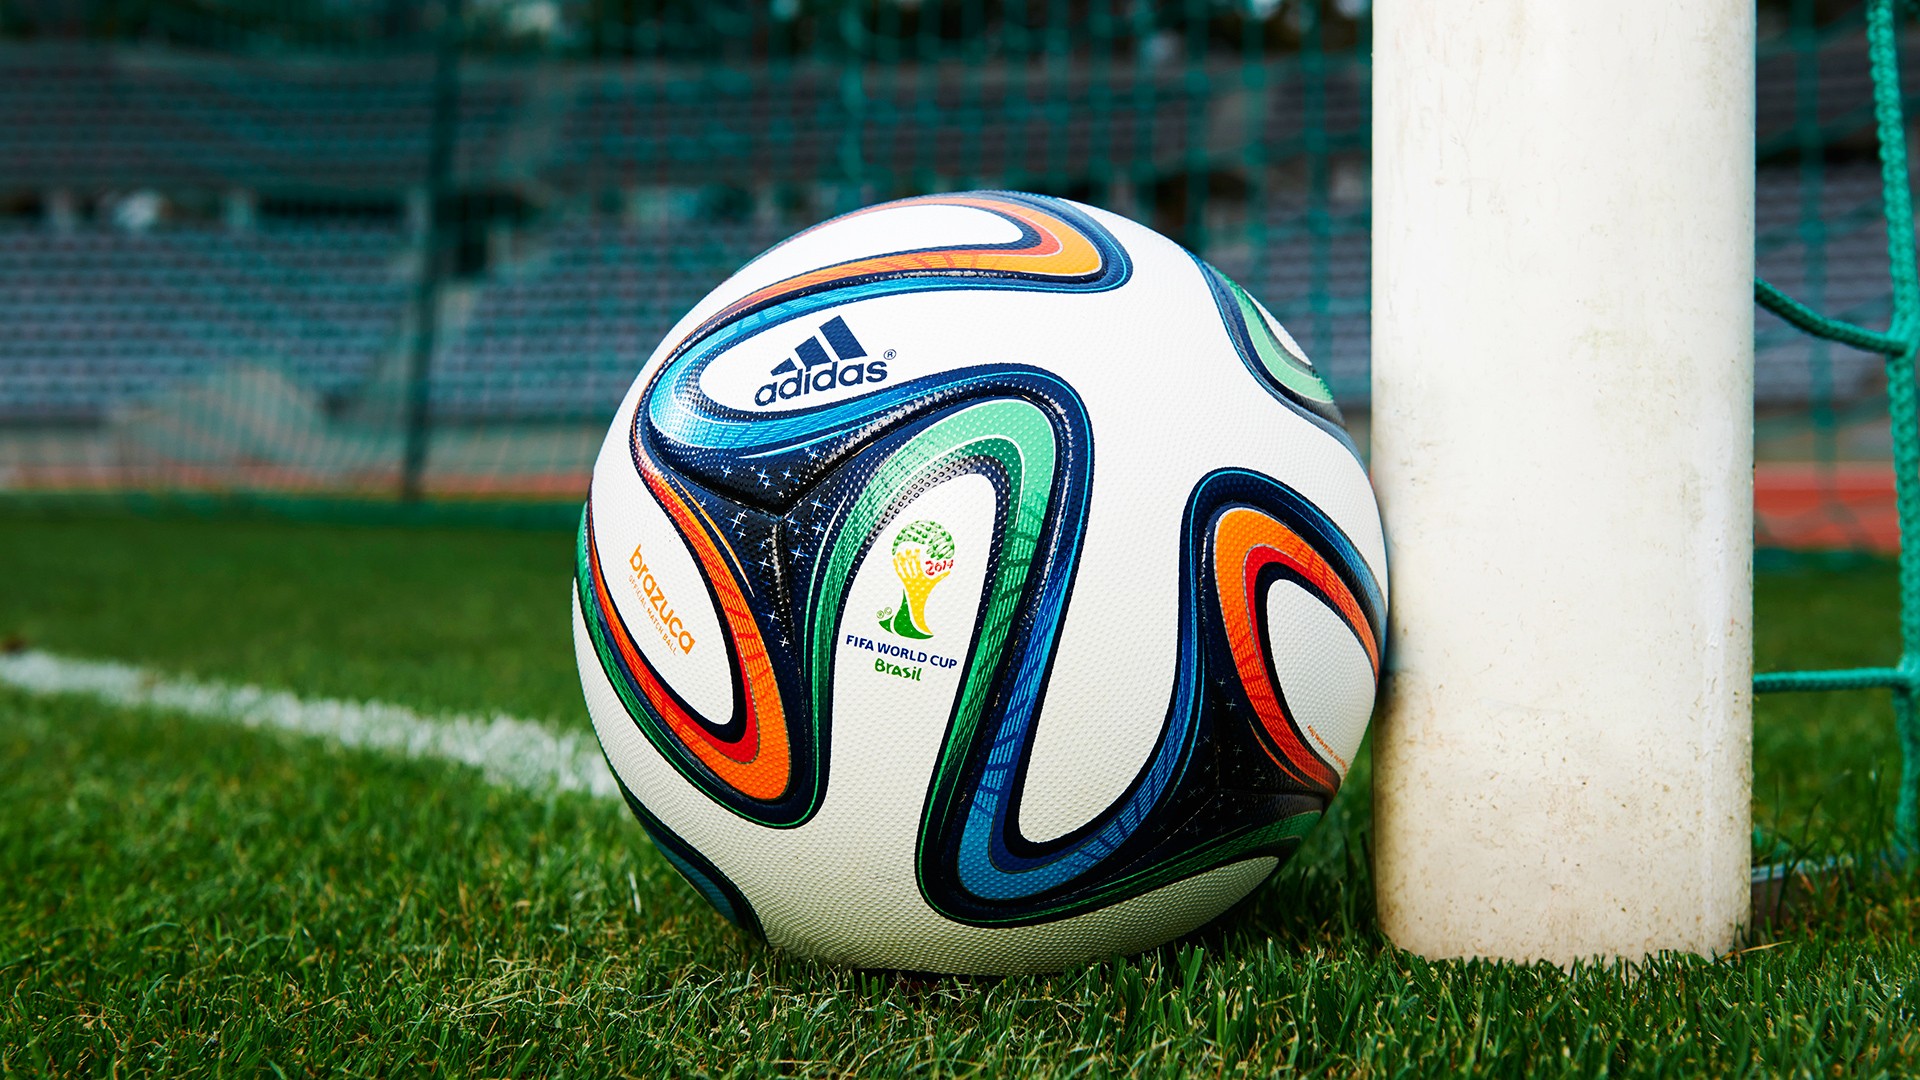 General 1920x1080 FIFA World Cup soccer ball grass soccer ball Adidas sport